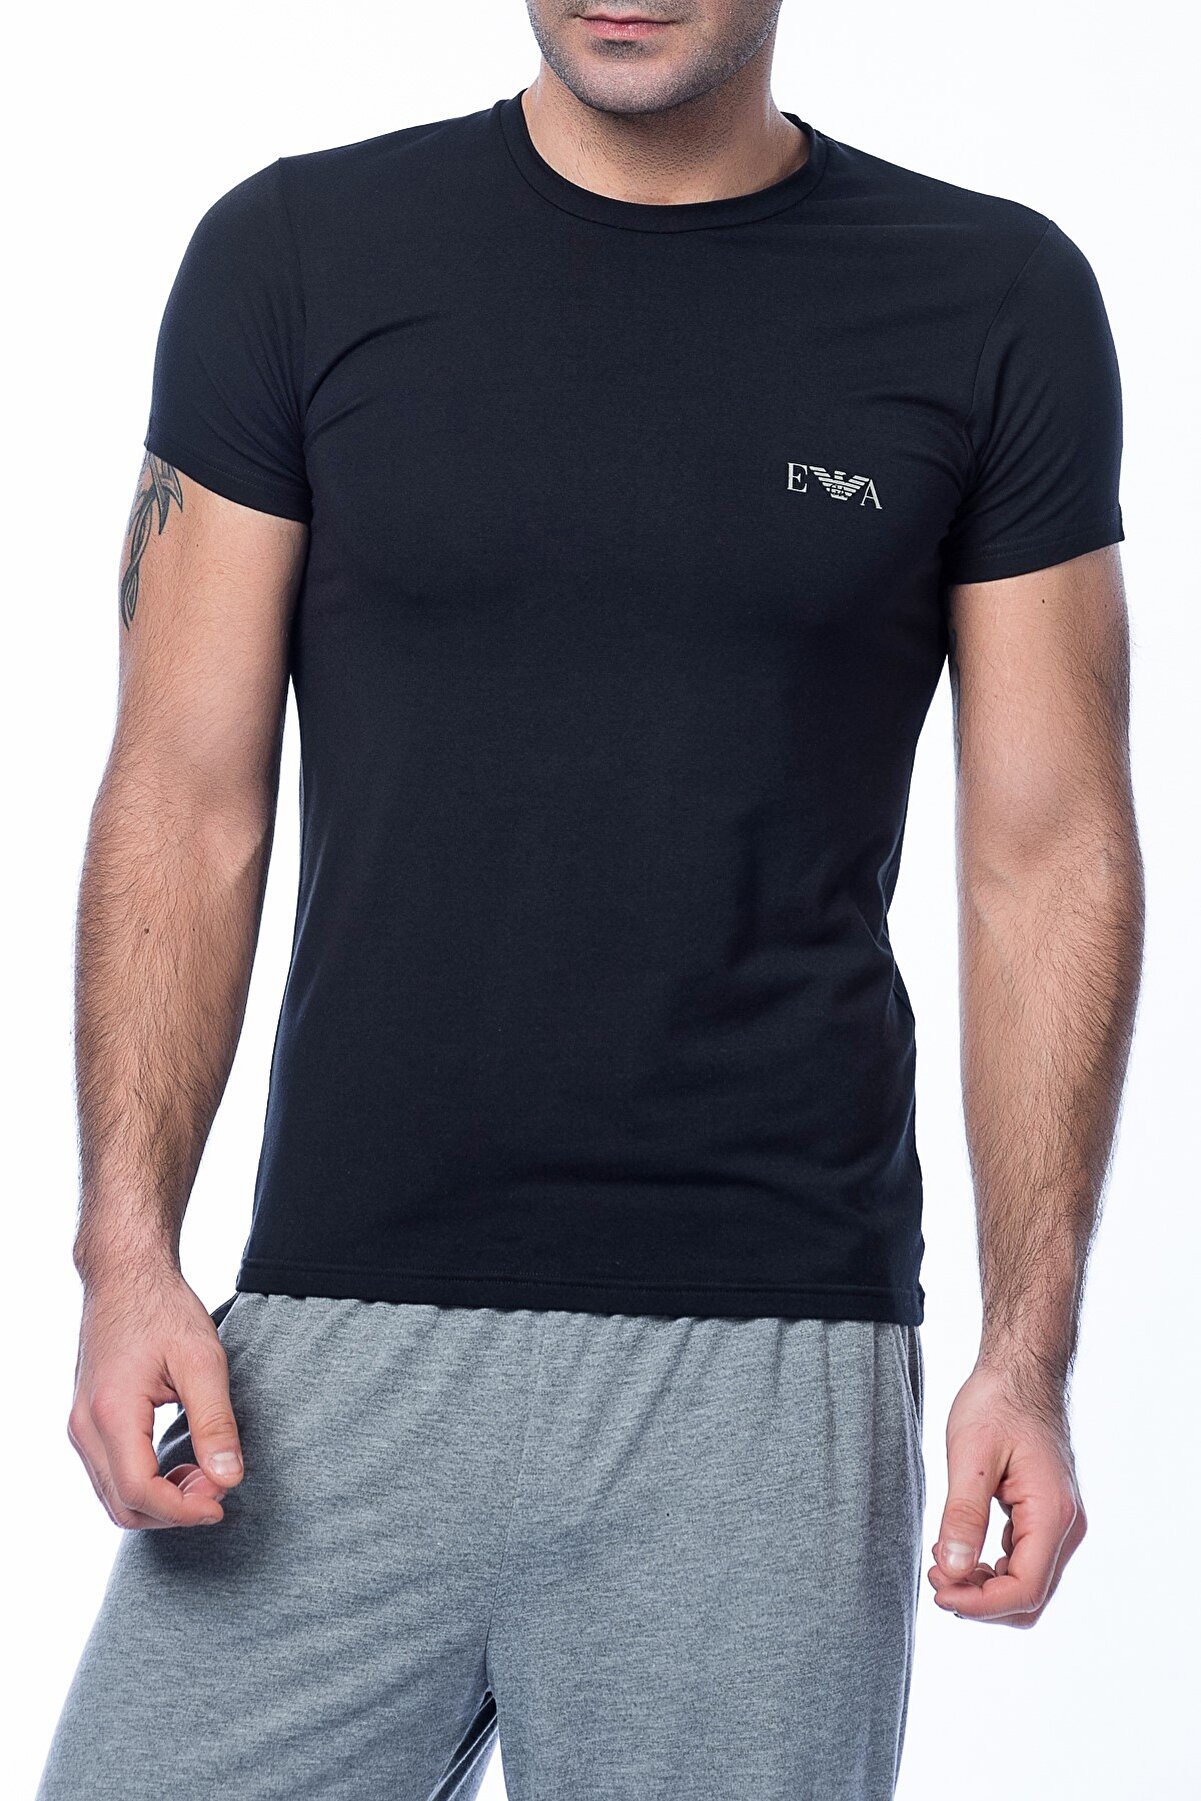 Emporio Armani Erkek Siyah T-Shirt